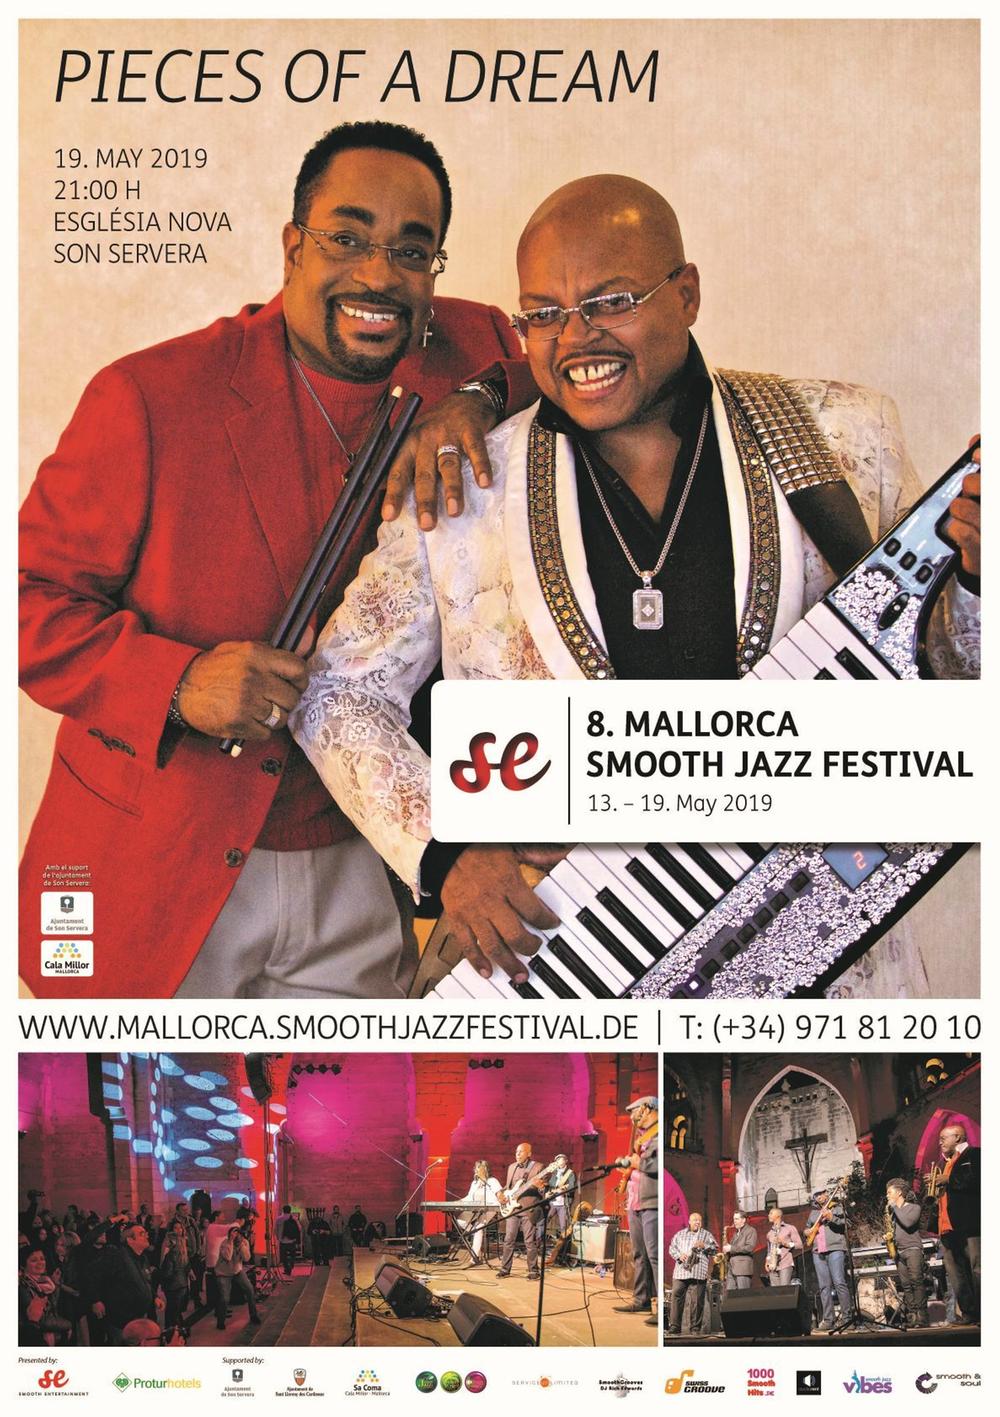 8. Mallorca Smooth Jazz Festival: Pieces of a dream